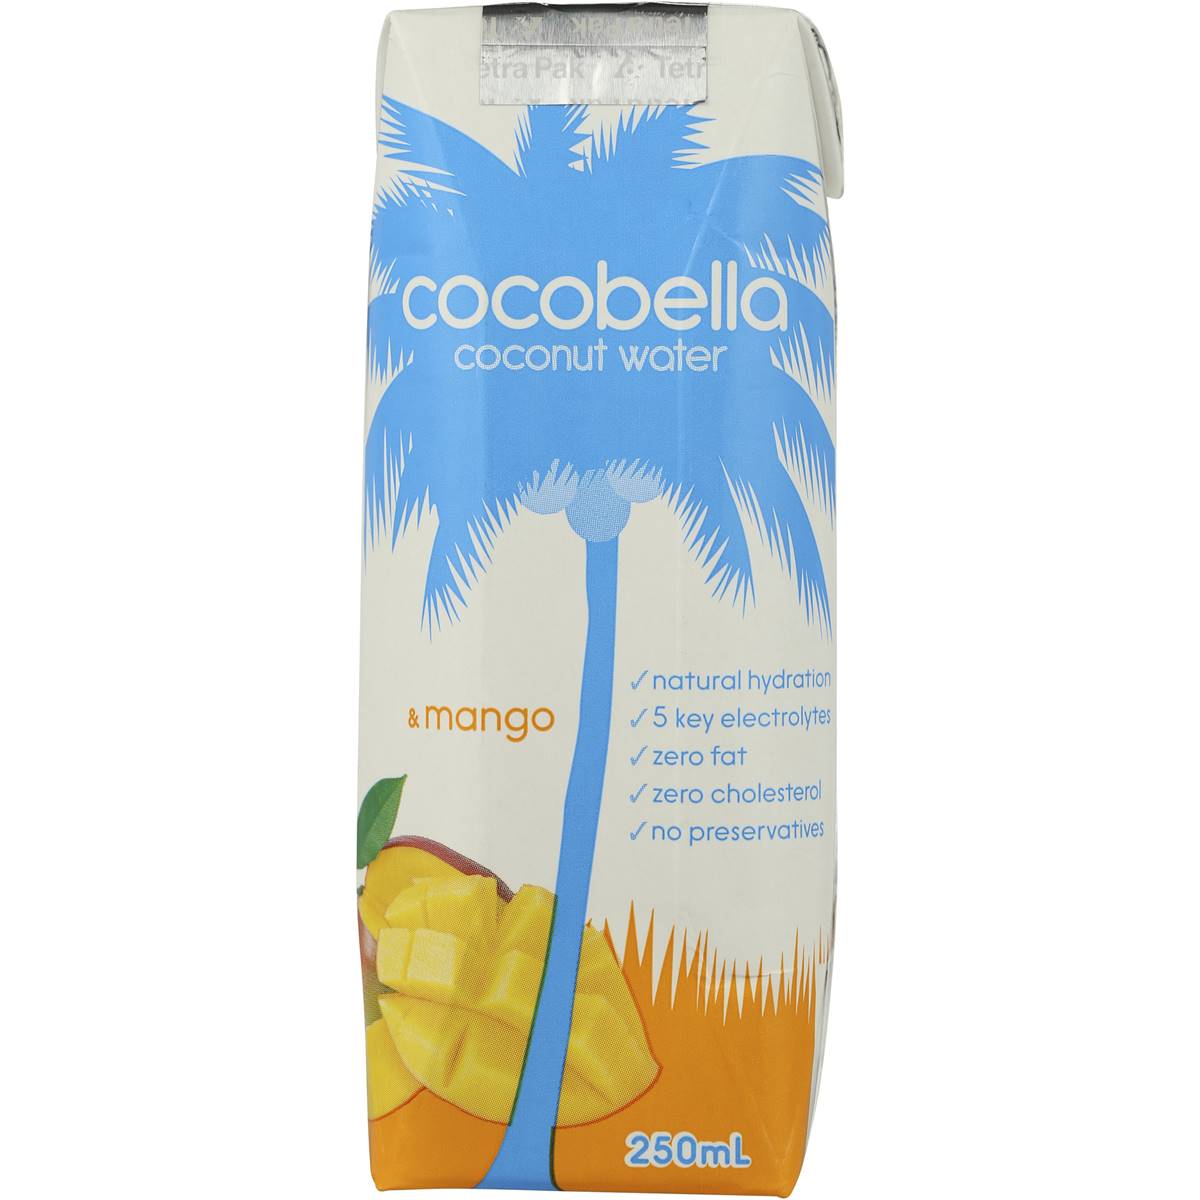 Calories in Cocobella Cocobella Coconut Water & Mango